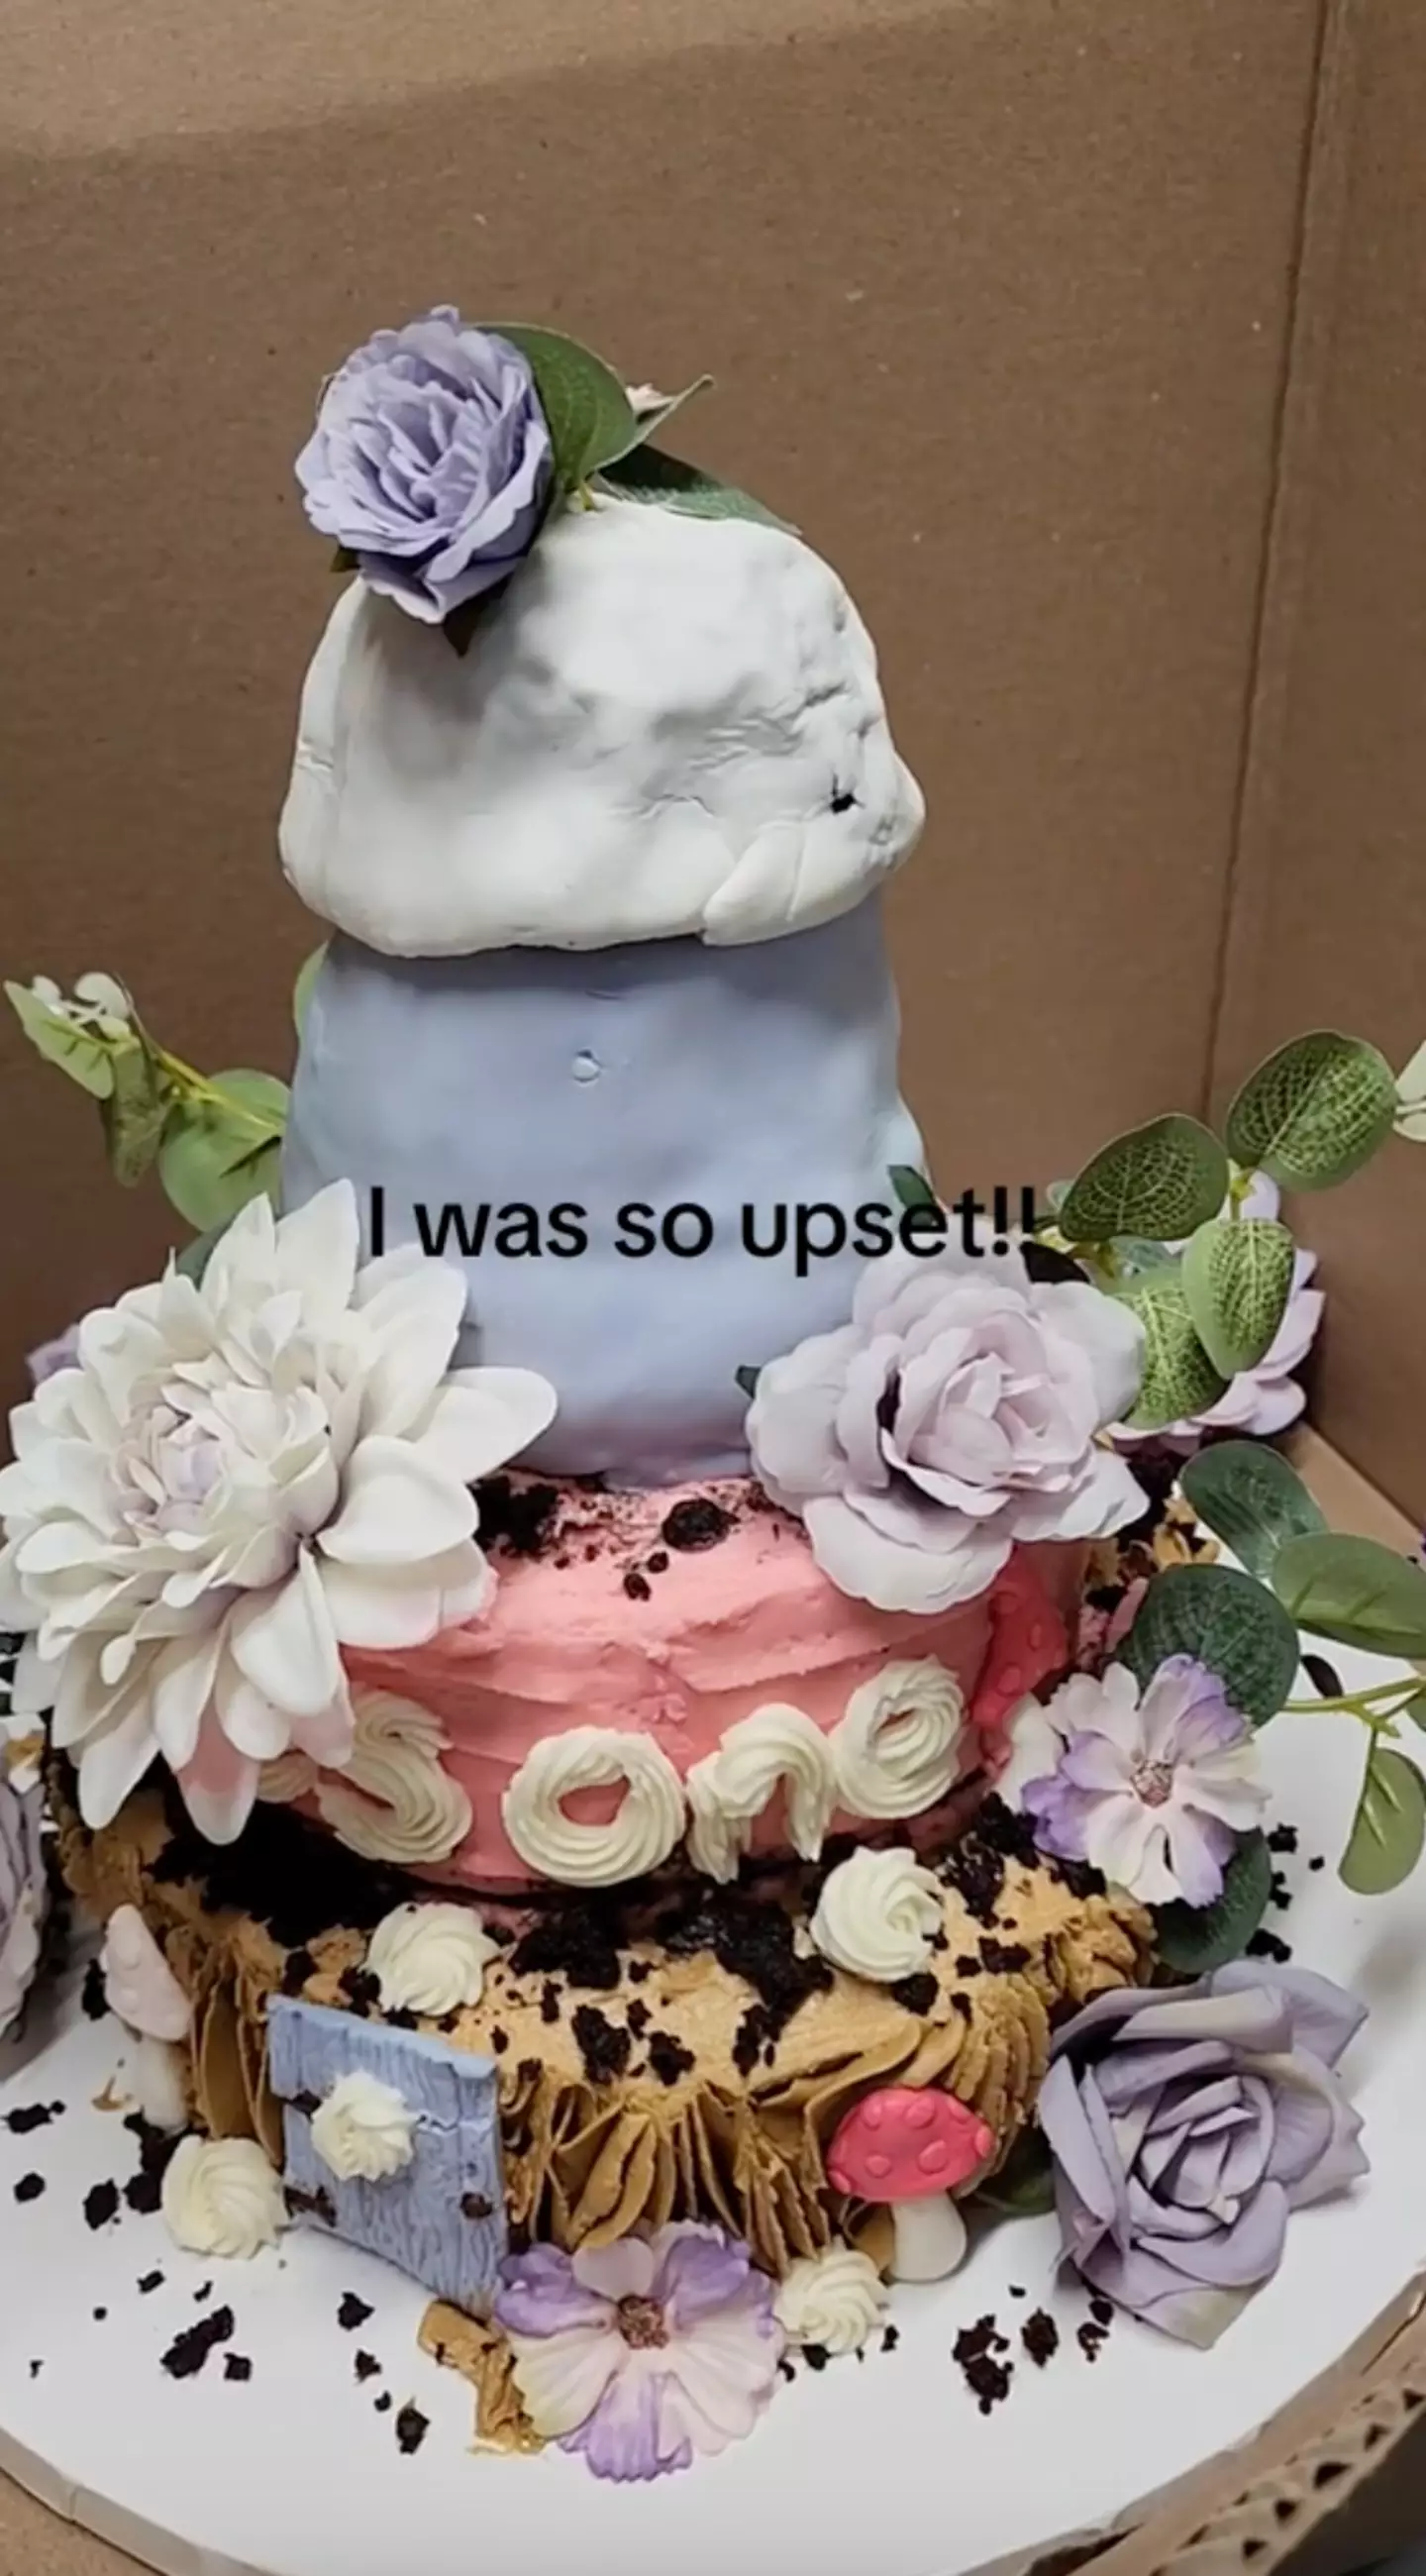 The cake cost $200 (around £150).